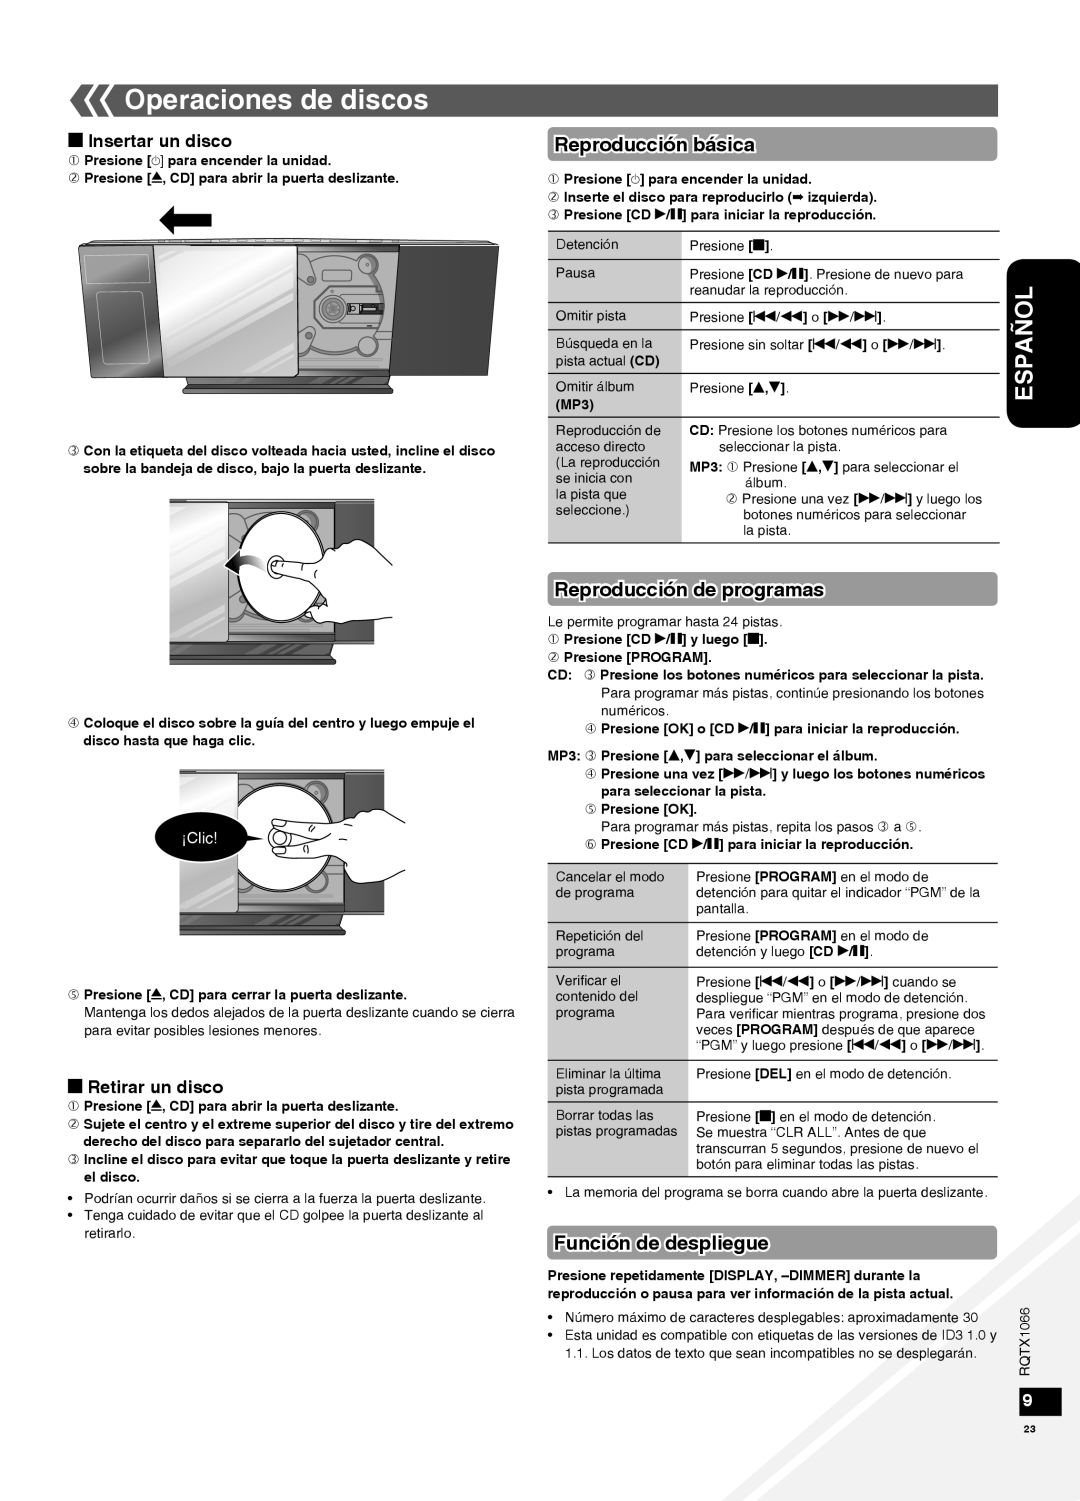 Panasonic SC-HC30 Operaciones de discos, Reproducción básica, Reproducción de programas, Función de despliegue, ¡Clic 